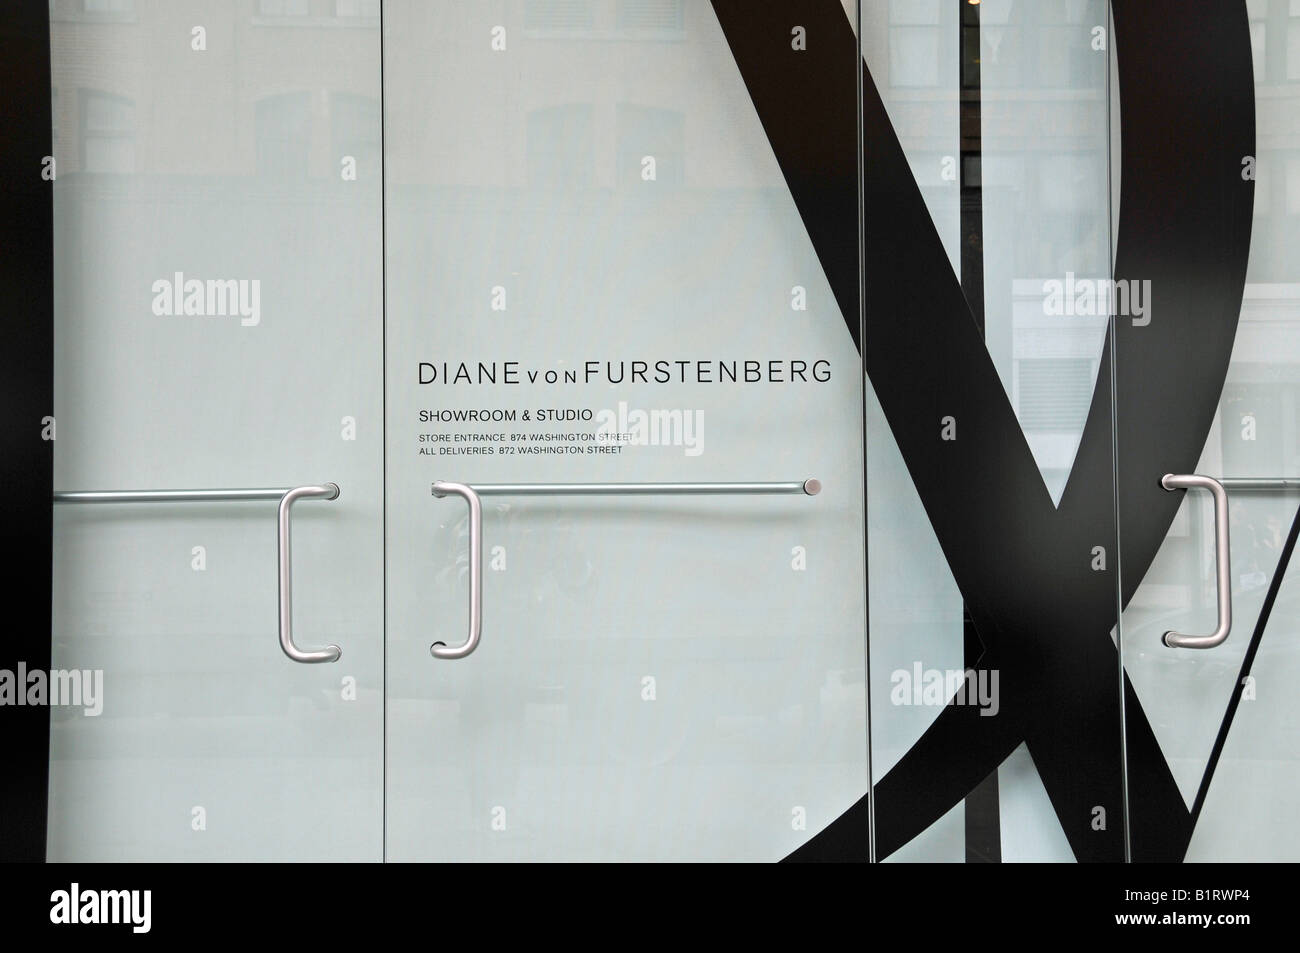 Diane von Furstenberg, créateur de mode, de vente au détail à Manhattan, New York City, USA Banque D'Images